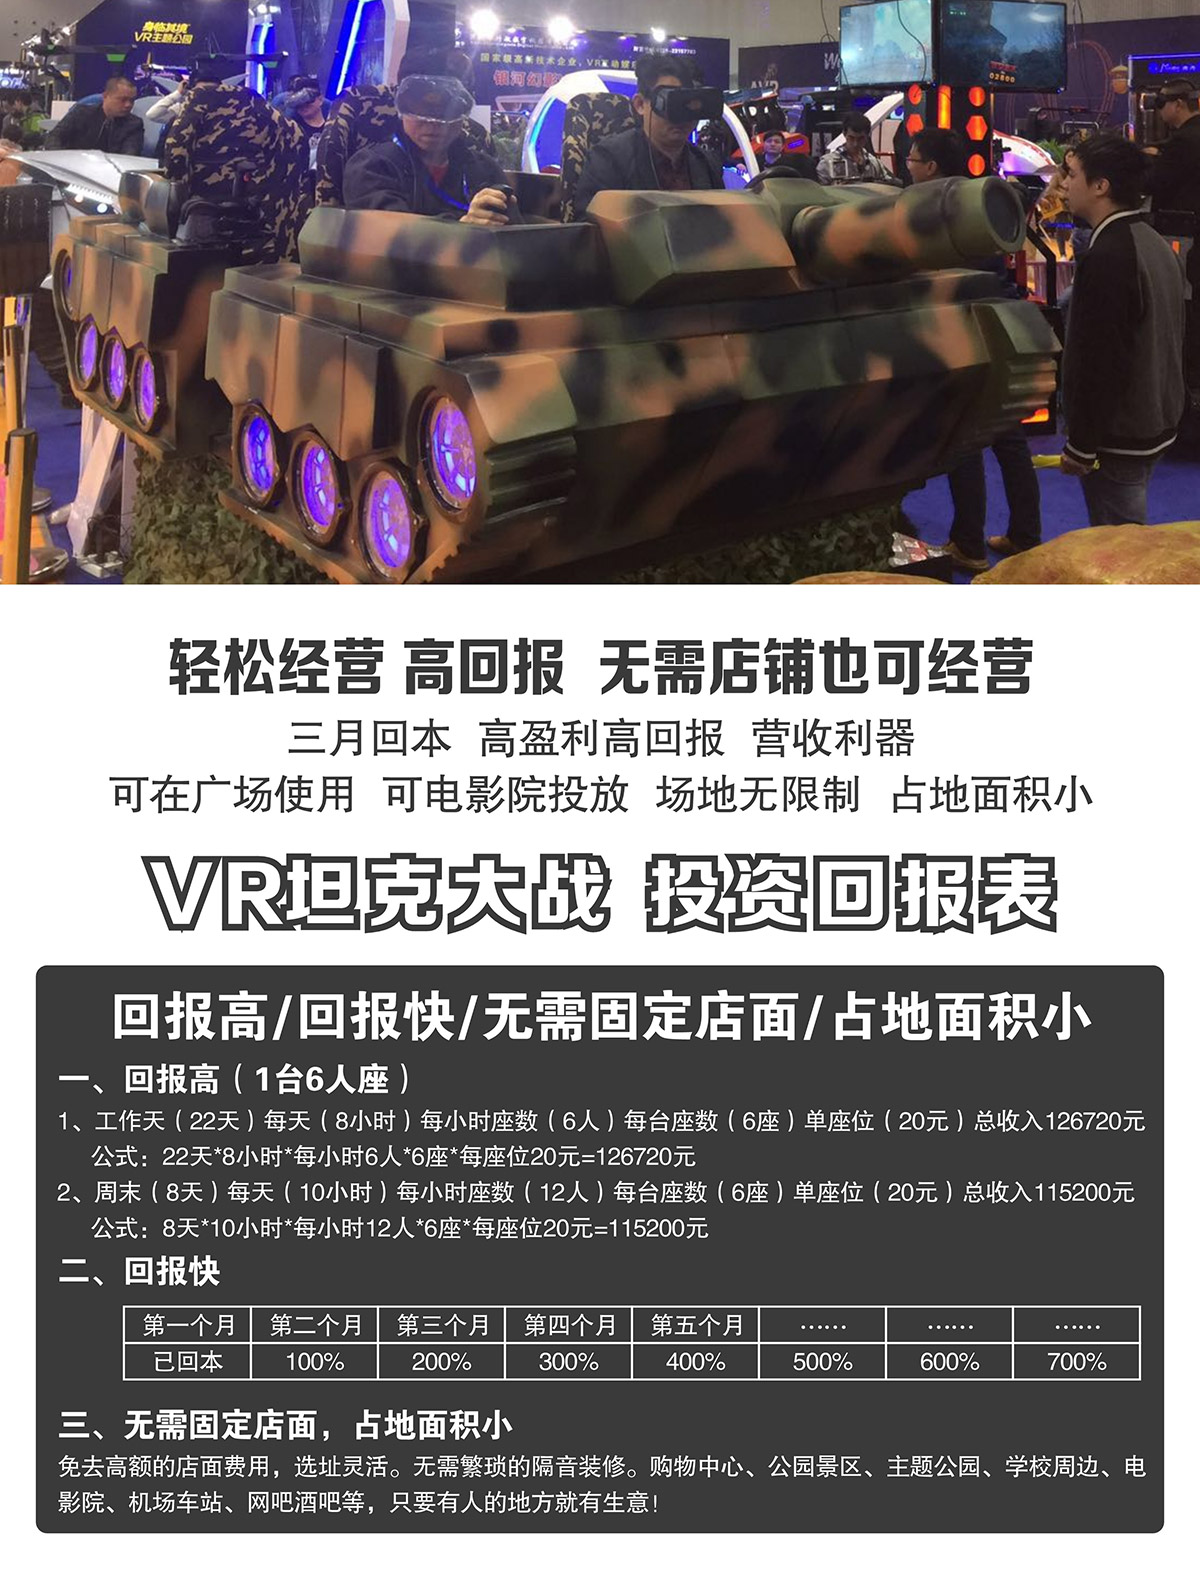 校园安全VR坦克大战投资回报表.jpg